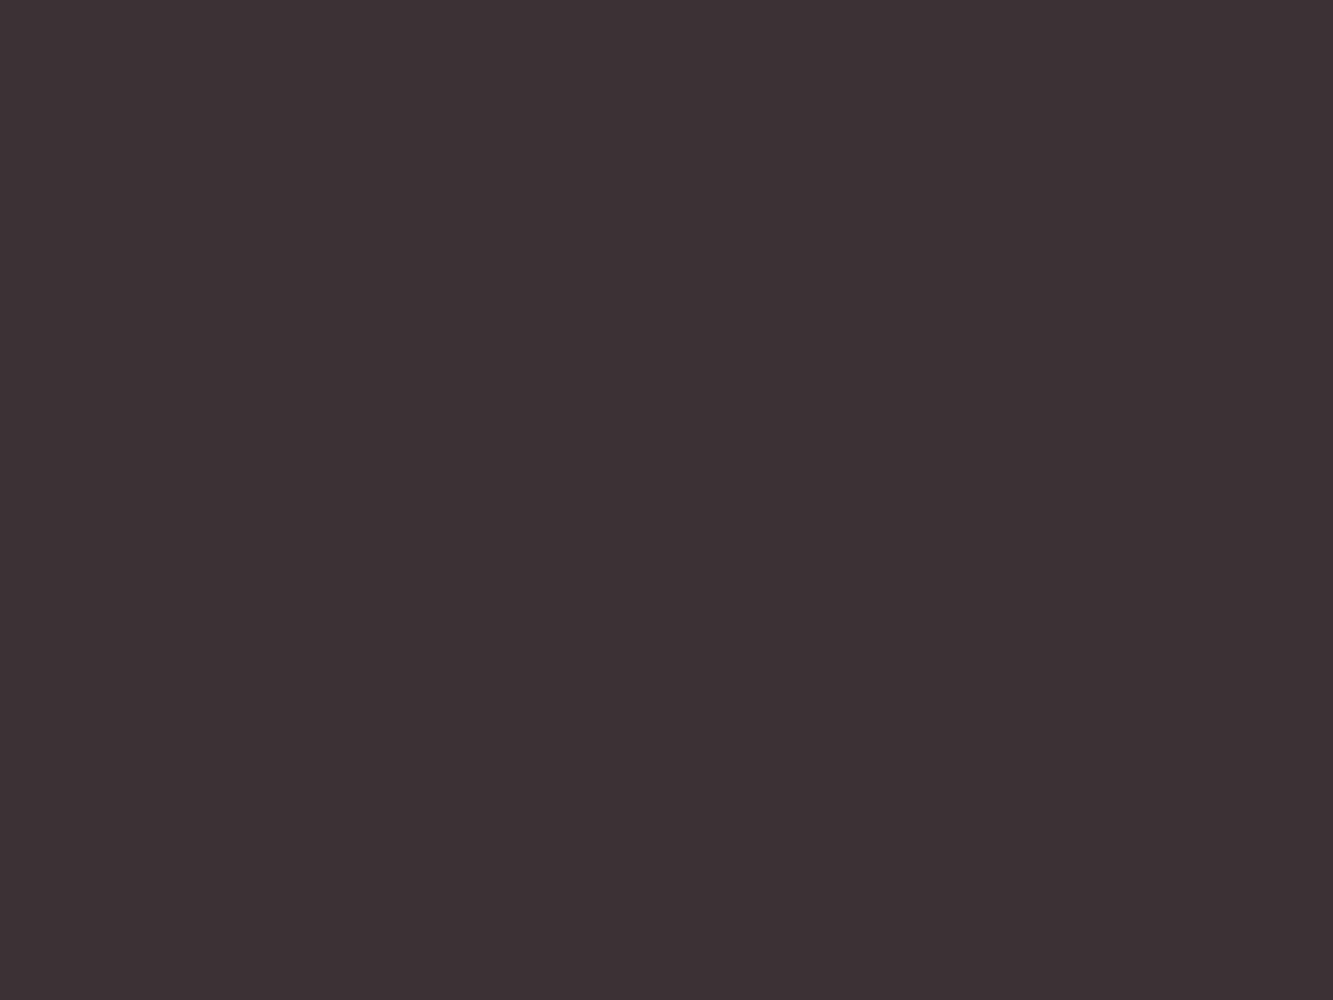 Певец Николай Носков на юбилейном концерте Сергея Мазаева в Московском театре оперетты, Москва. 2009 год. Фотография: Владимир Астапкович / ТАСС